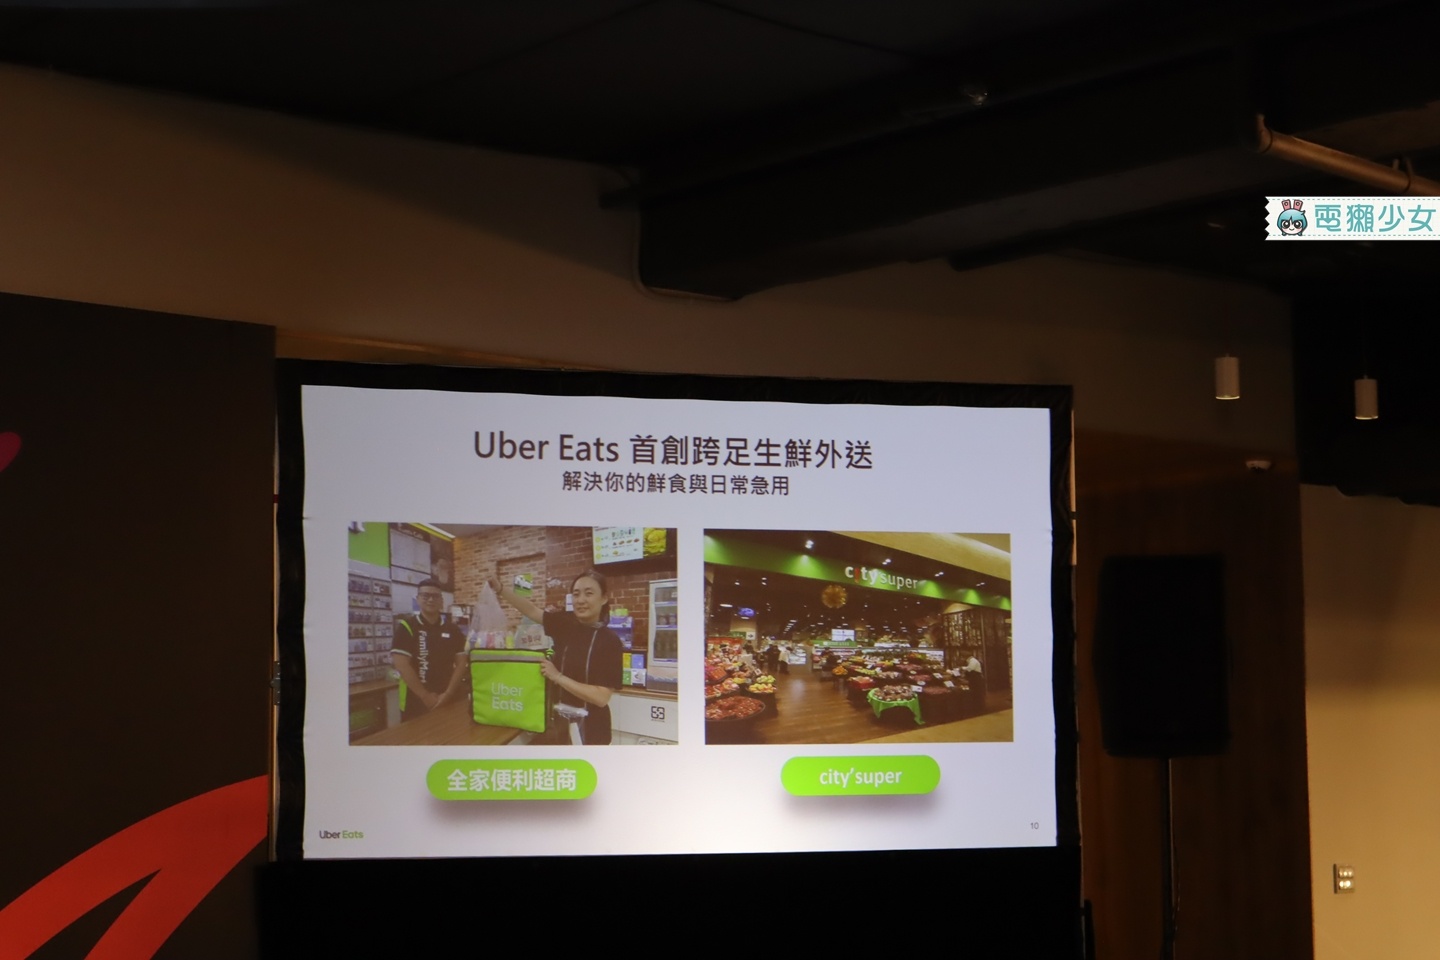 出門｜現在雲林、苗栗、屏東、宜蘭、花蓮五個新城市都能叫Uber Eats外送囉！